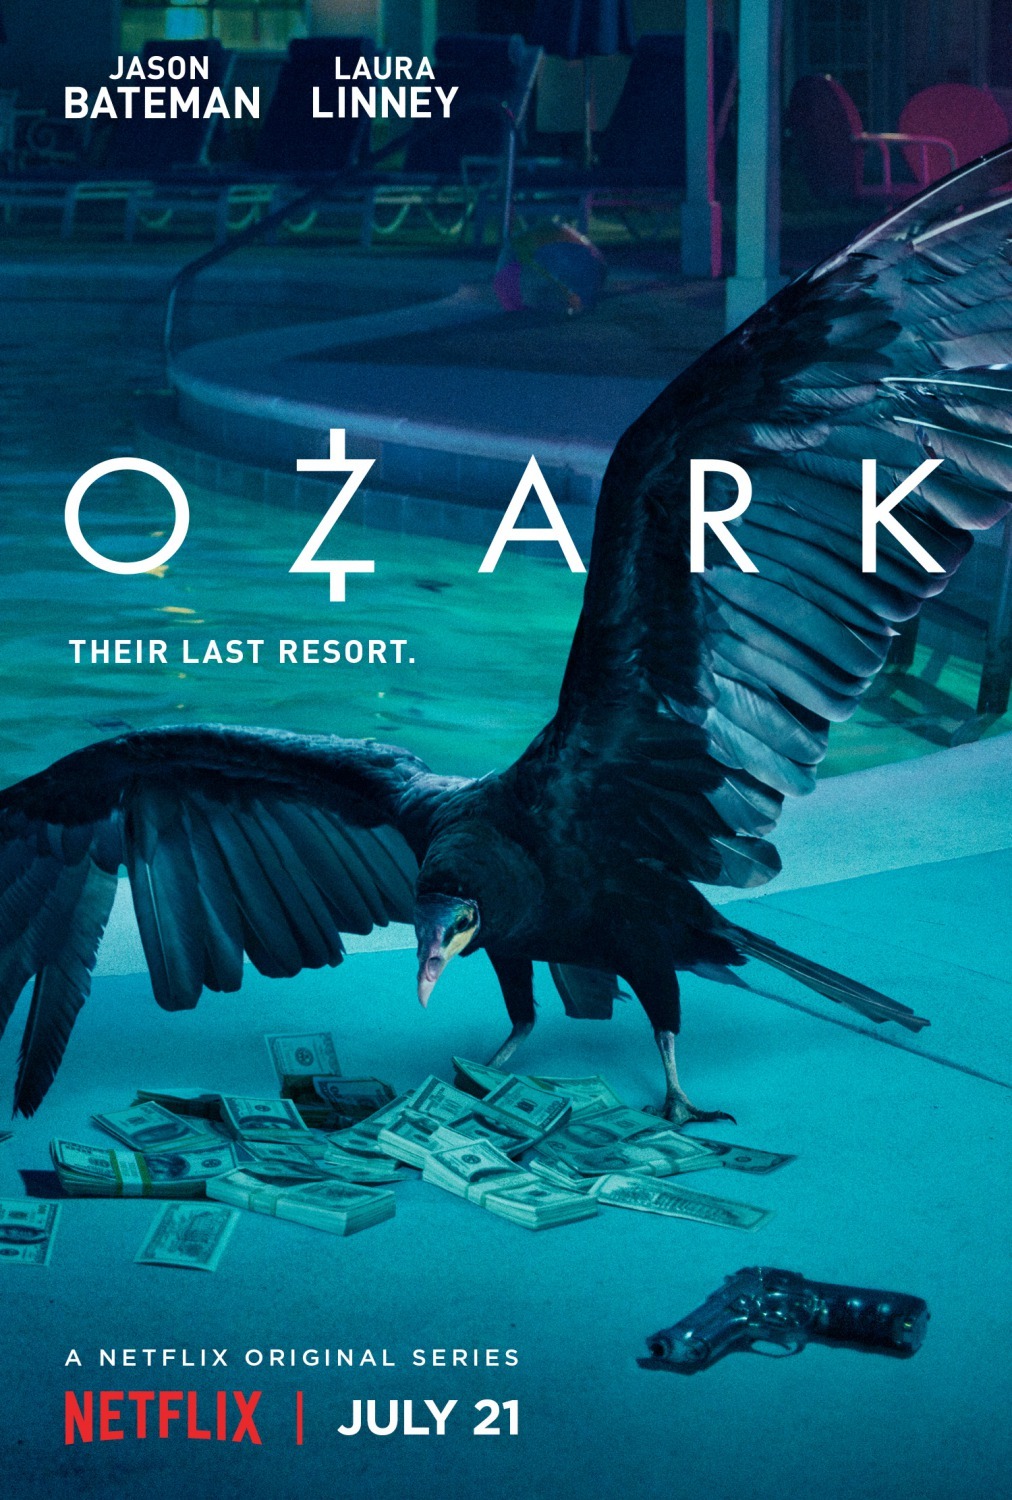 ดูหนังออนไลน์ฟรี Ozark Season 1 EP.1 โอซาร์ก ซีซั่น 1 ตอนที่ 1 (ซับไทย)